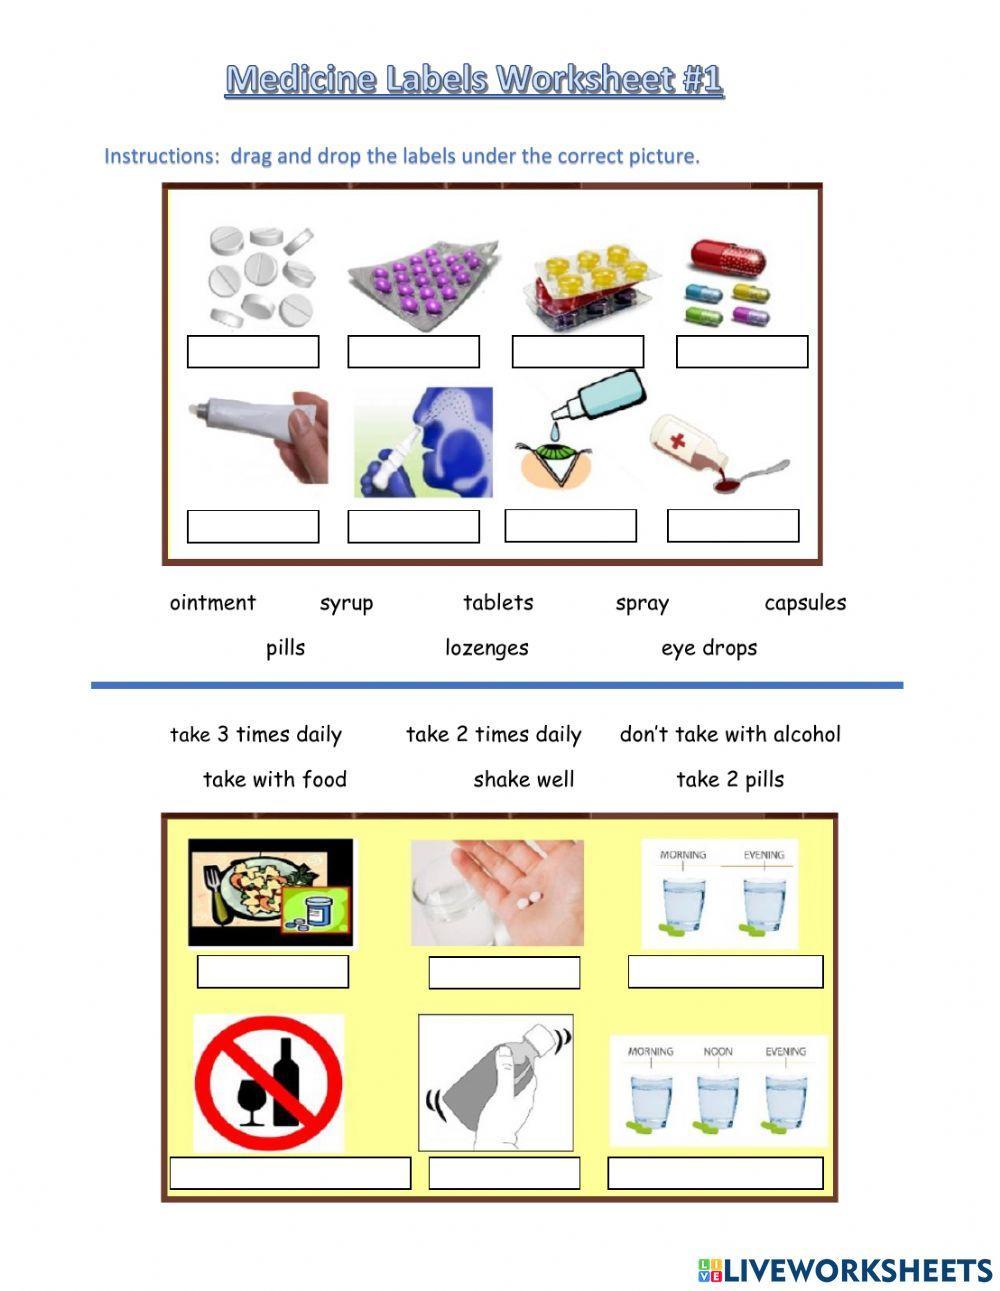 Medicine Labels Worksheet 1